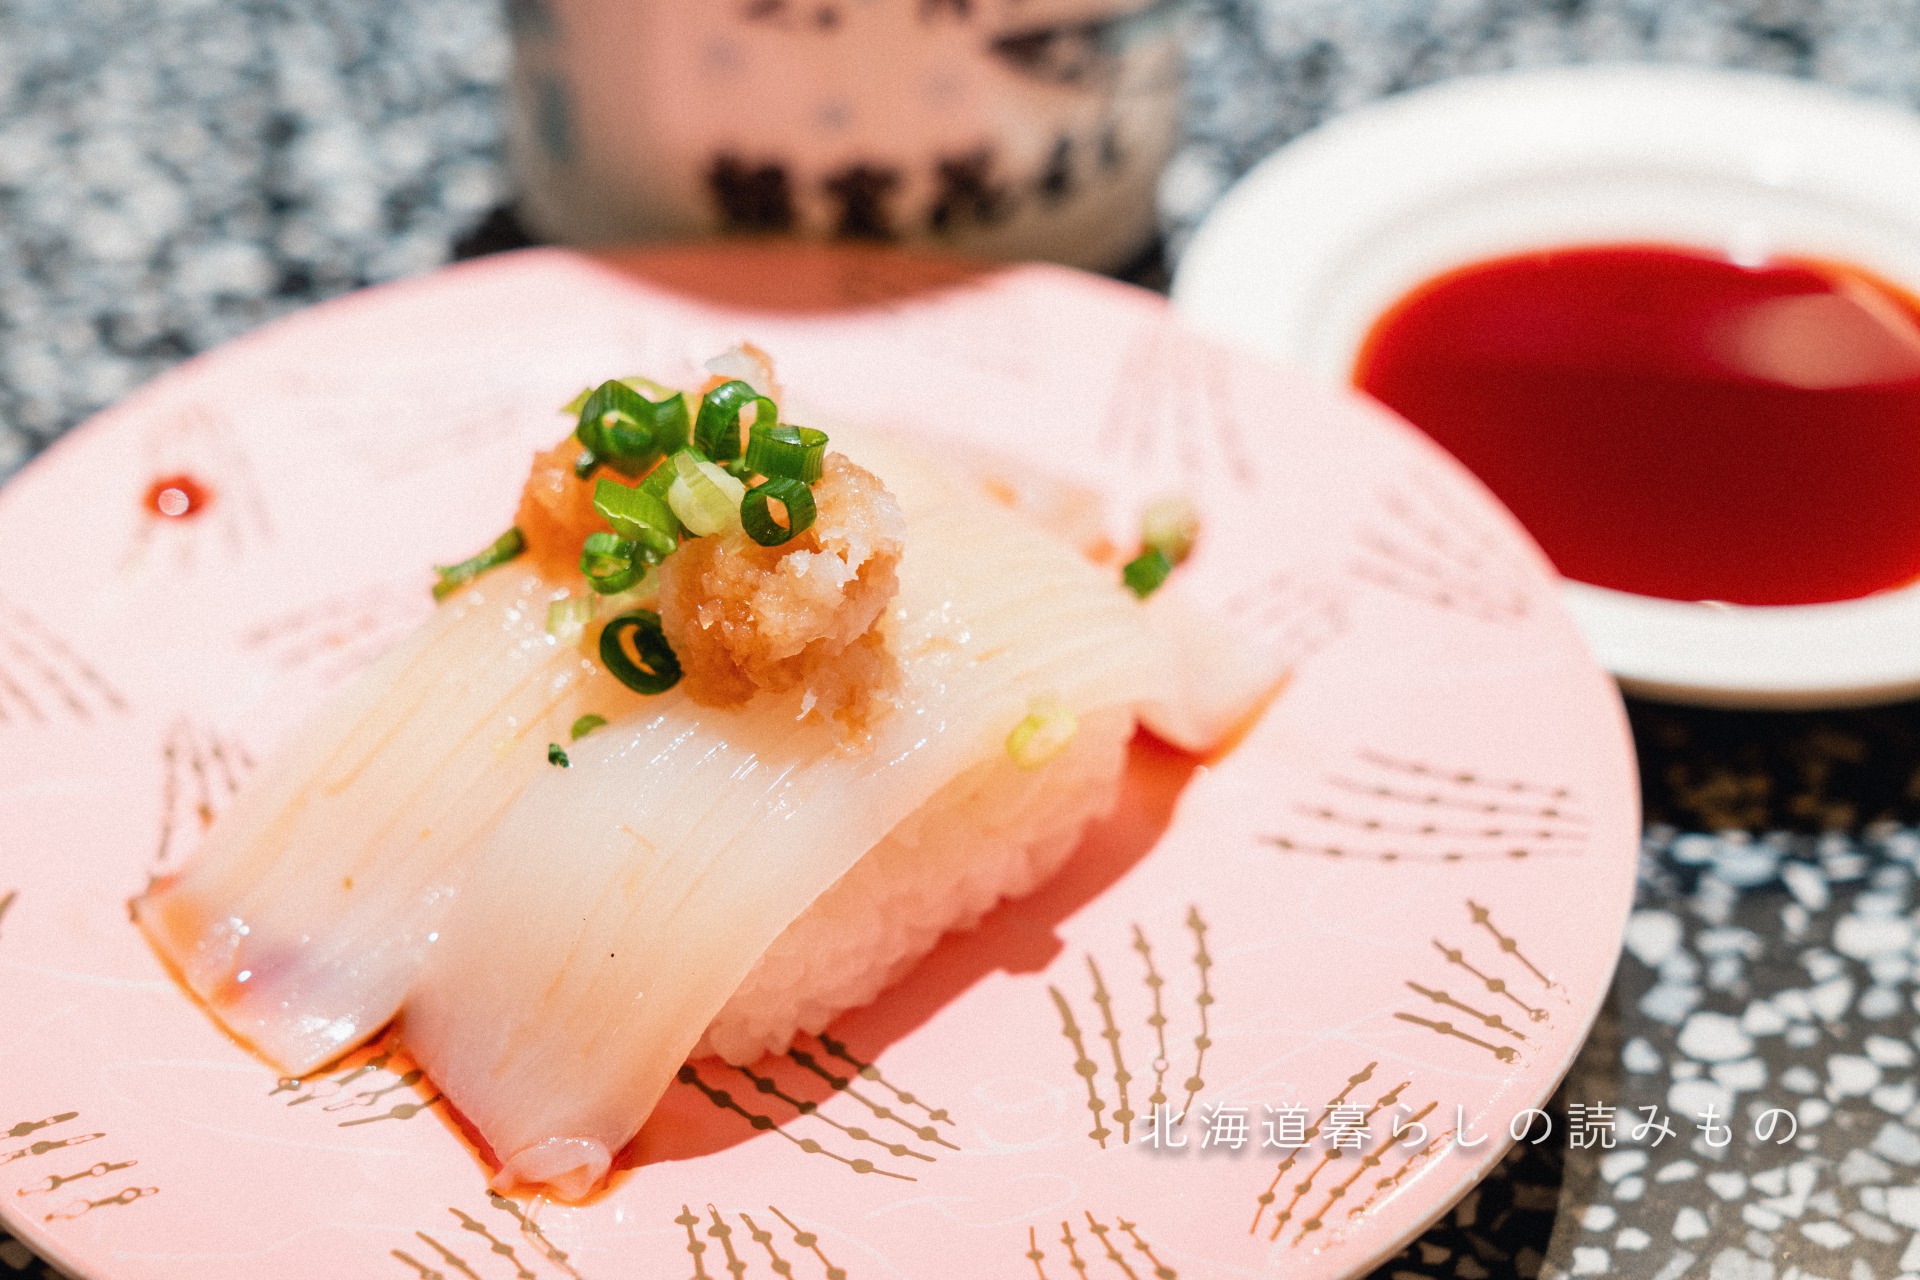 回転寿司 根室花まるのメニュー「いかポン」の写真